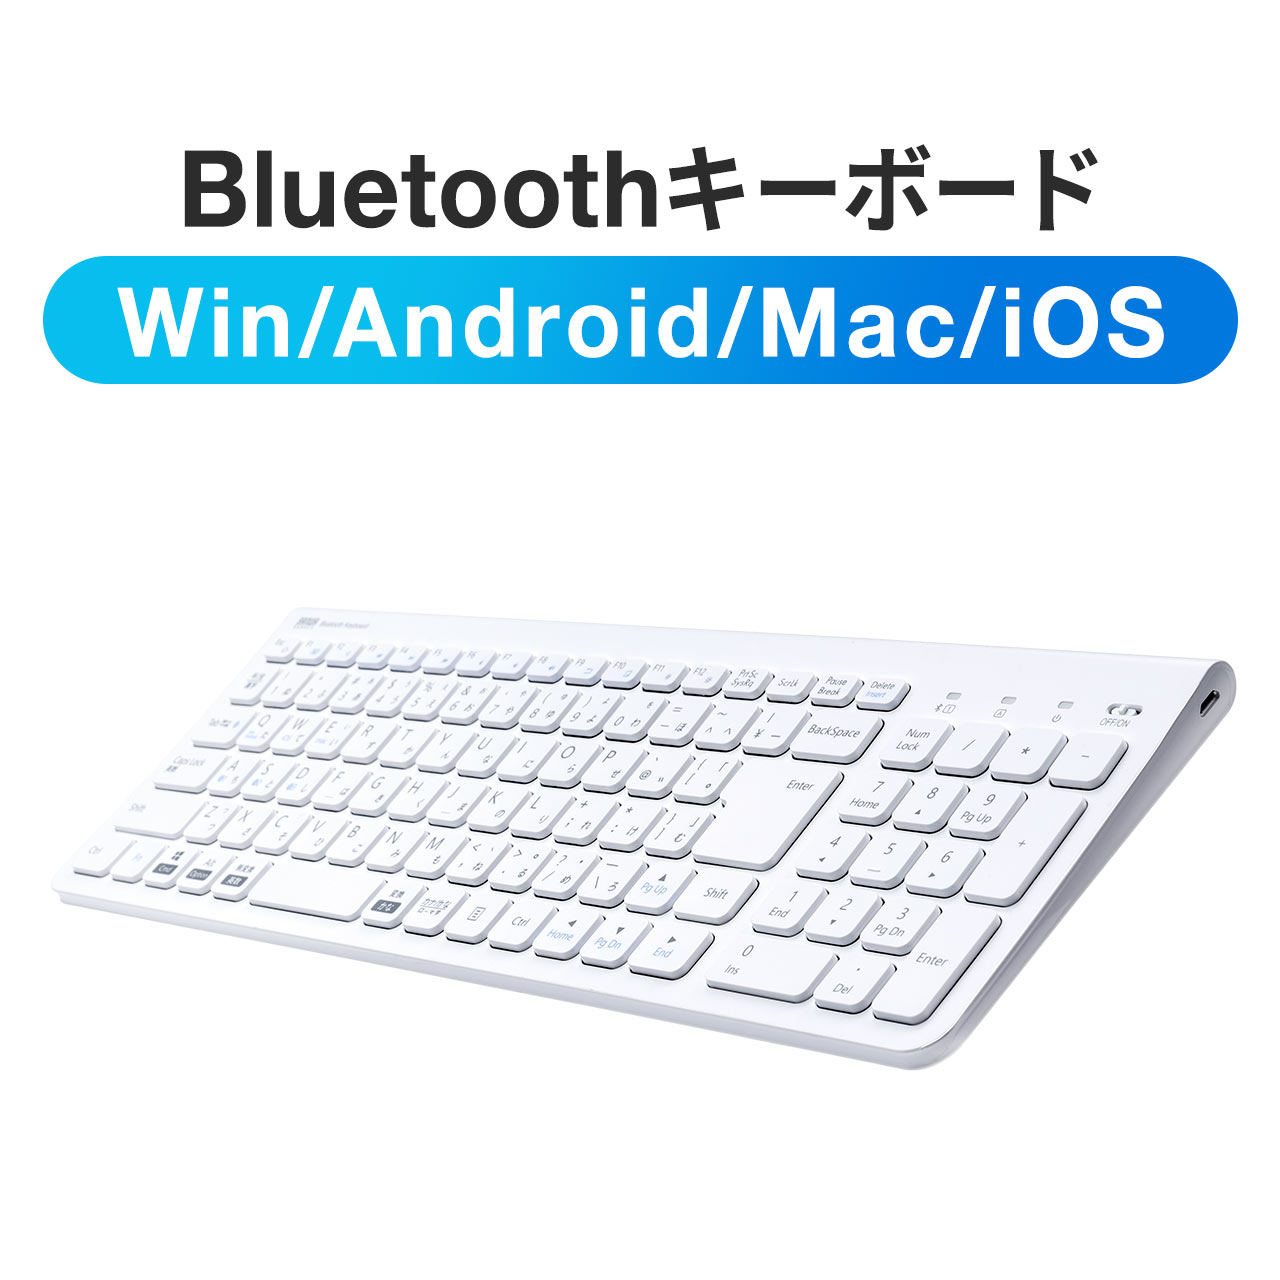 キーボード Bluetooth ワイヤレス 無線 充電式 薄型 軽量 マルチペア